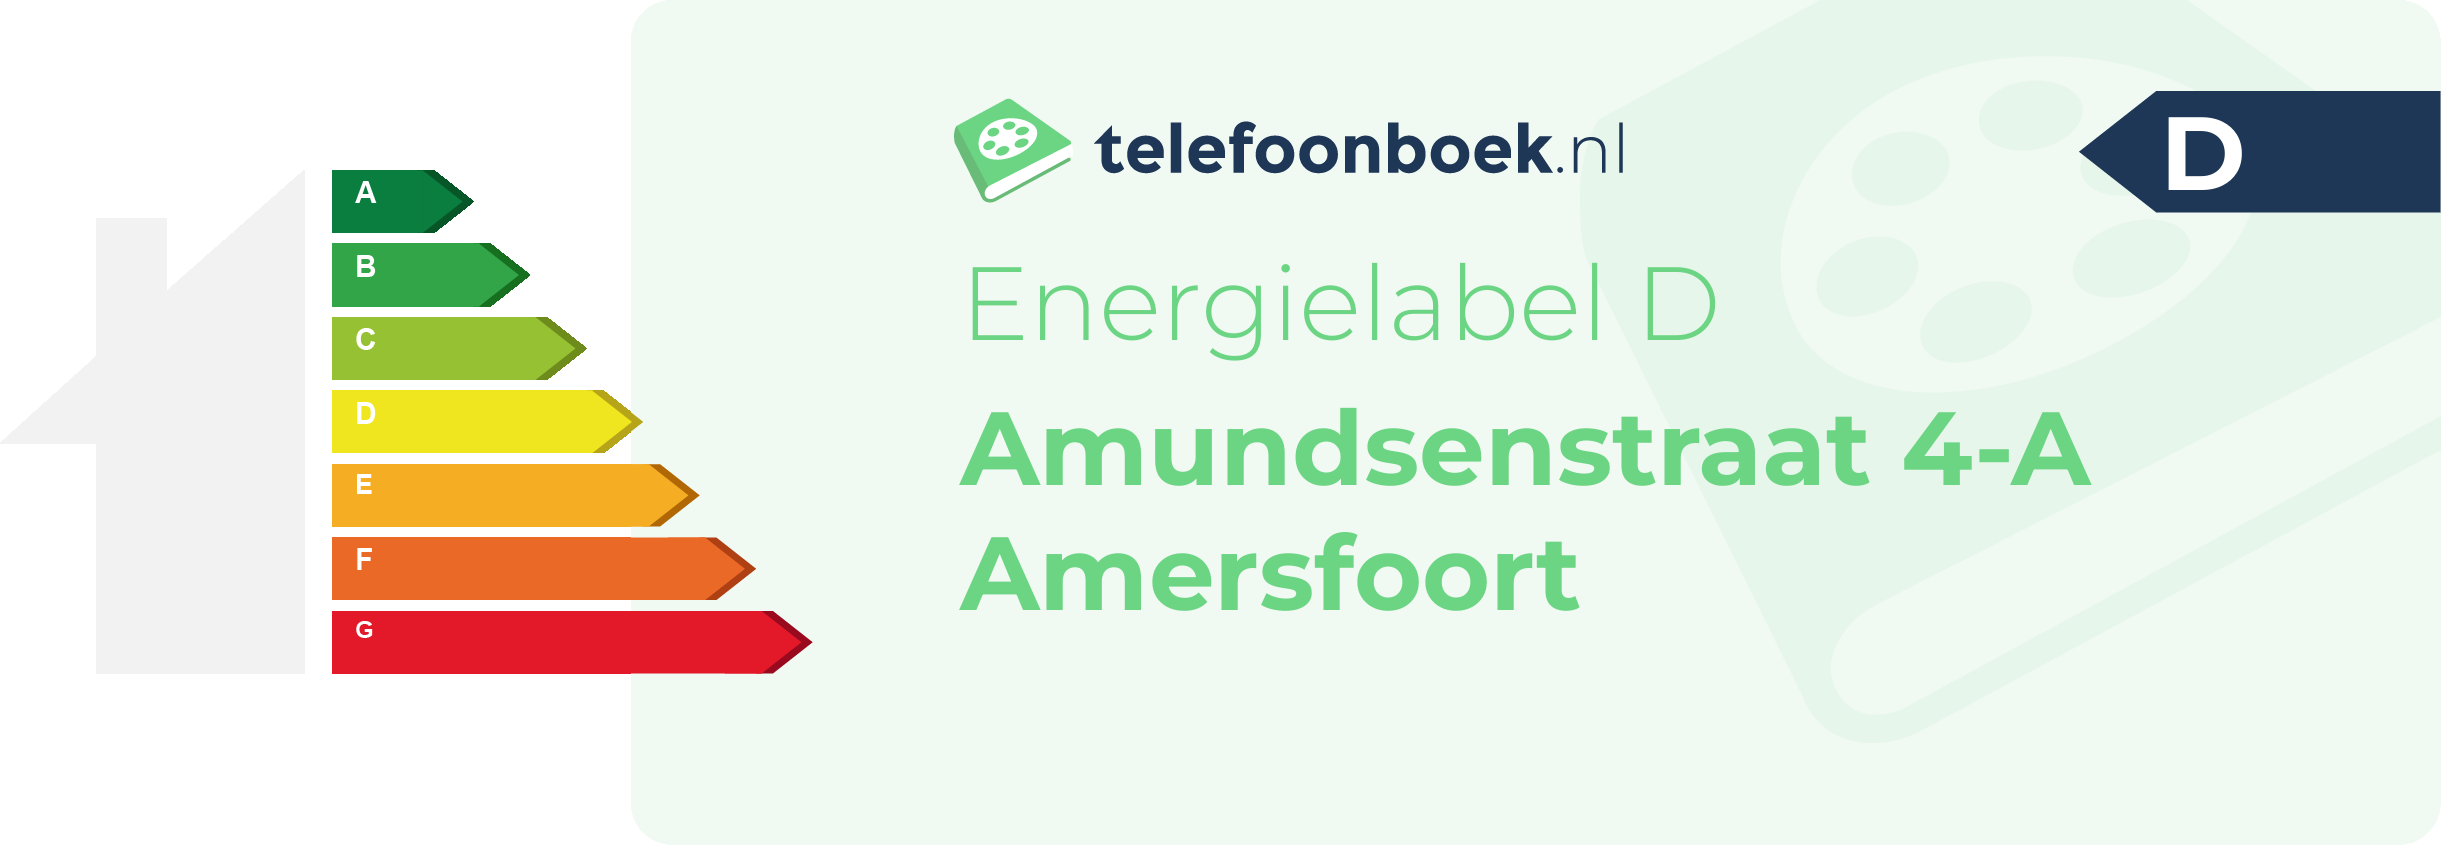 Energielabel Amundsenstraat 4-A Amersfoort